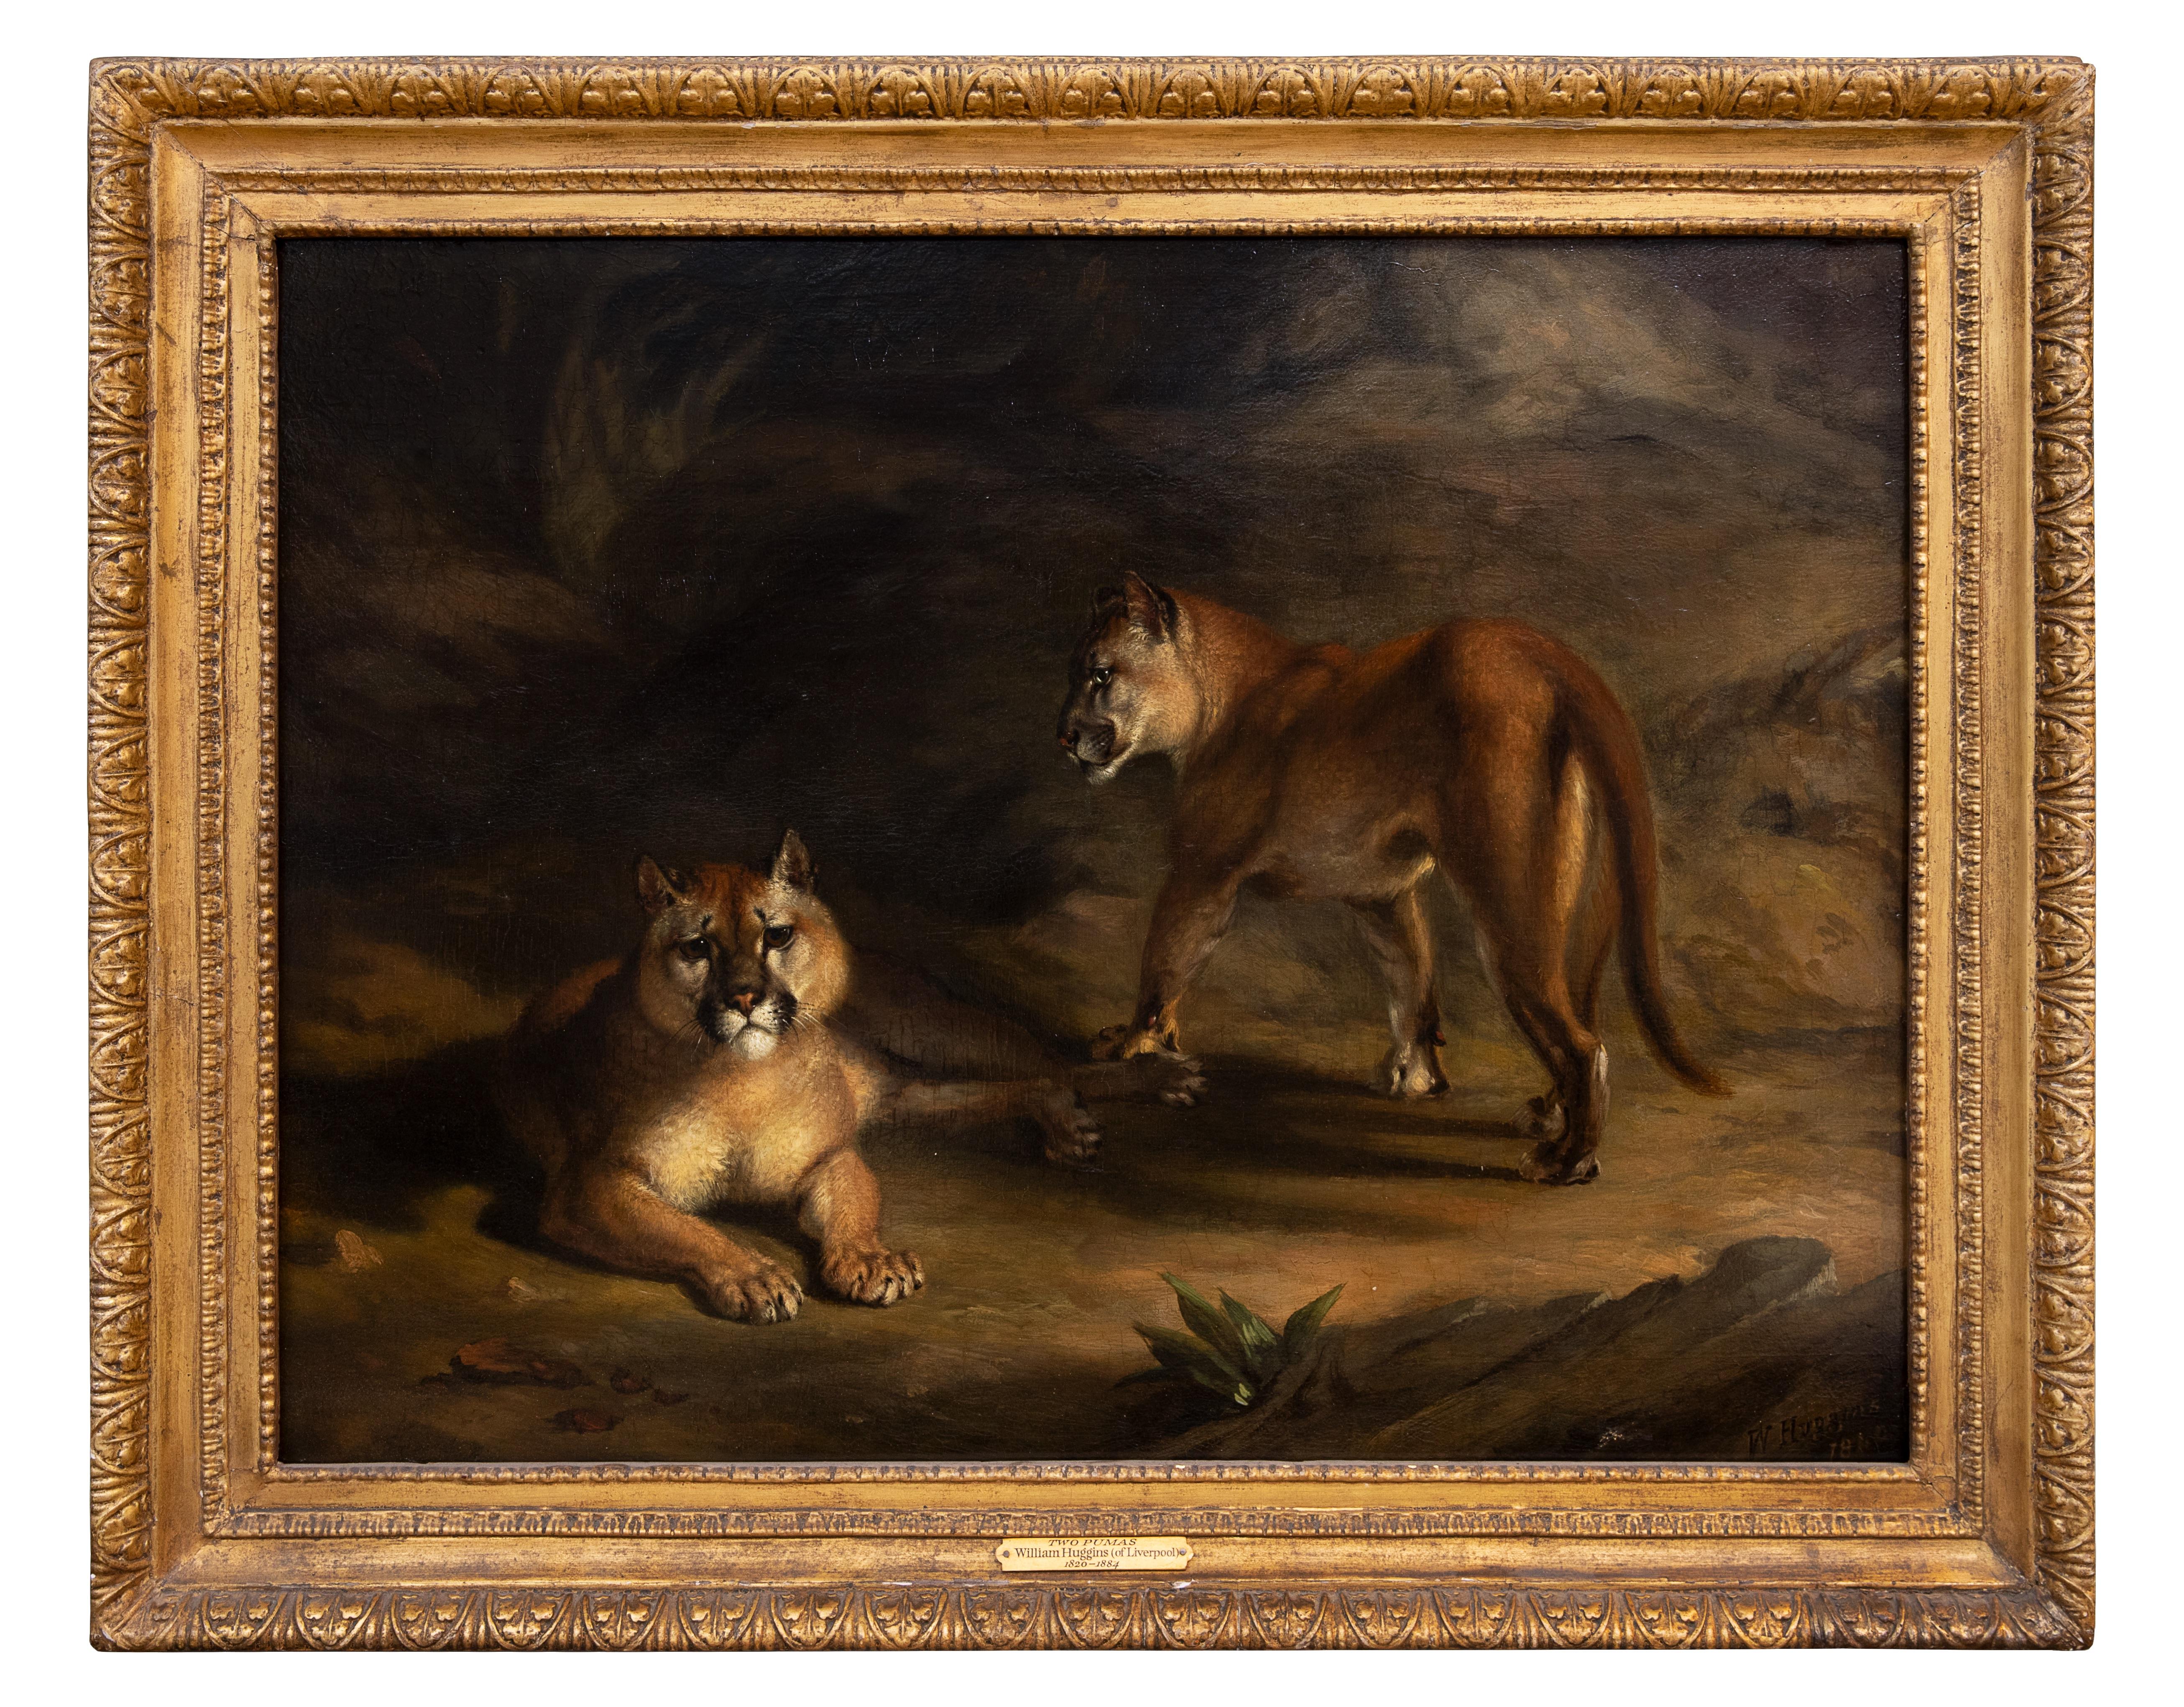 Zwei Pumas in einer Landschaft – Painting von William Huggins